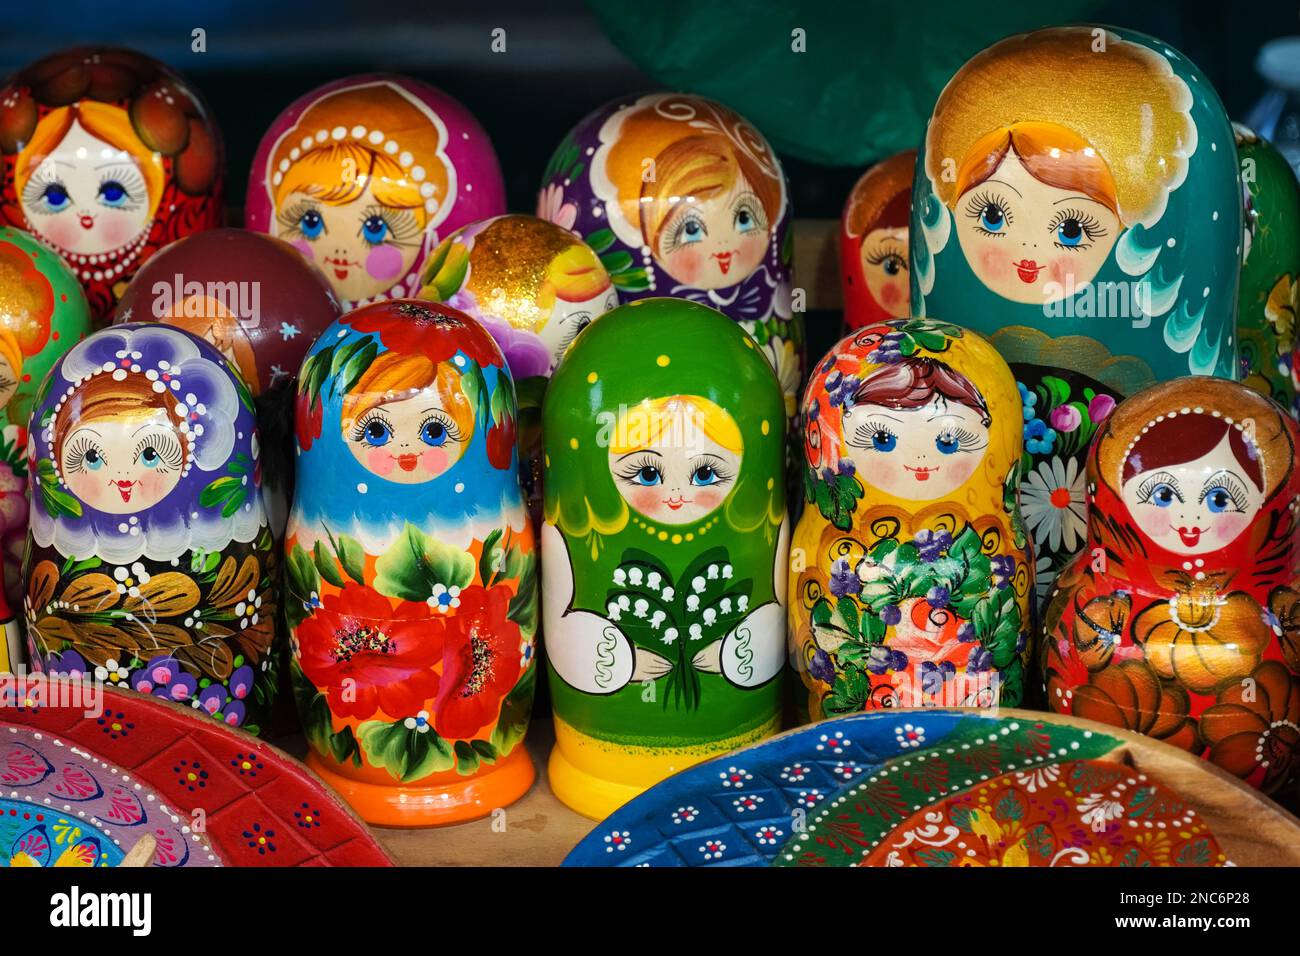 A display of Matryoshka dolls, babushka dolls Stock Photo